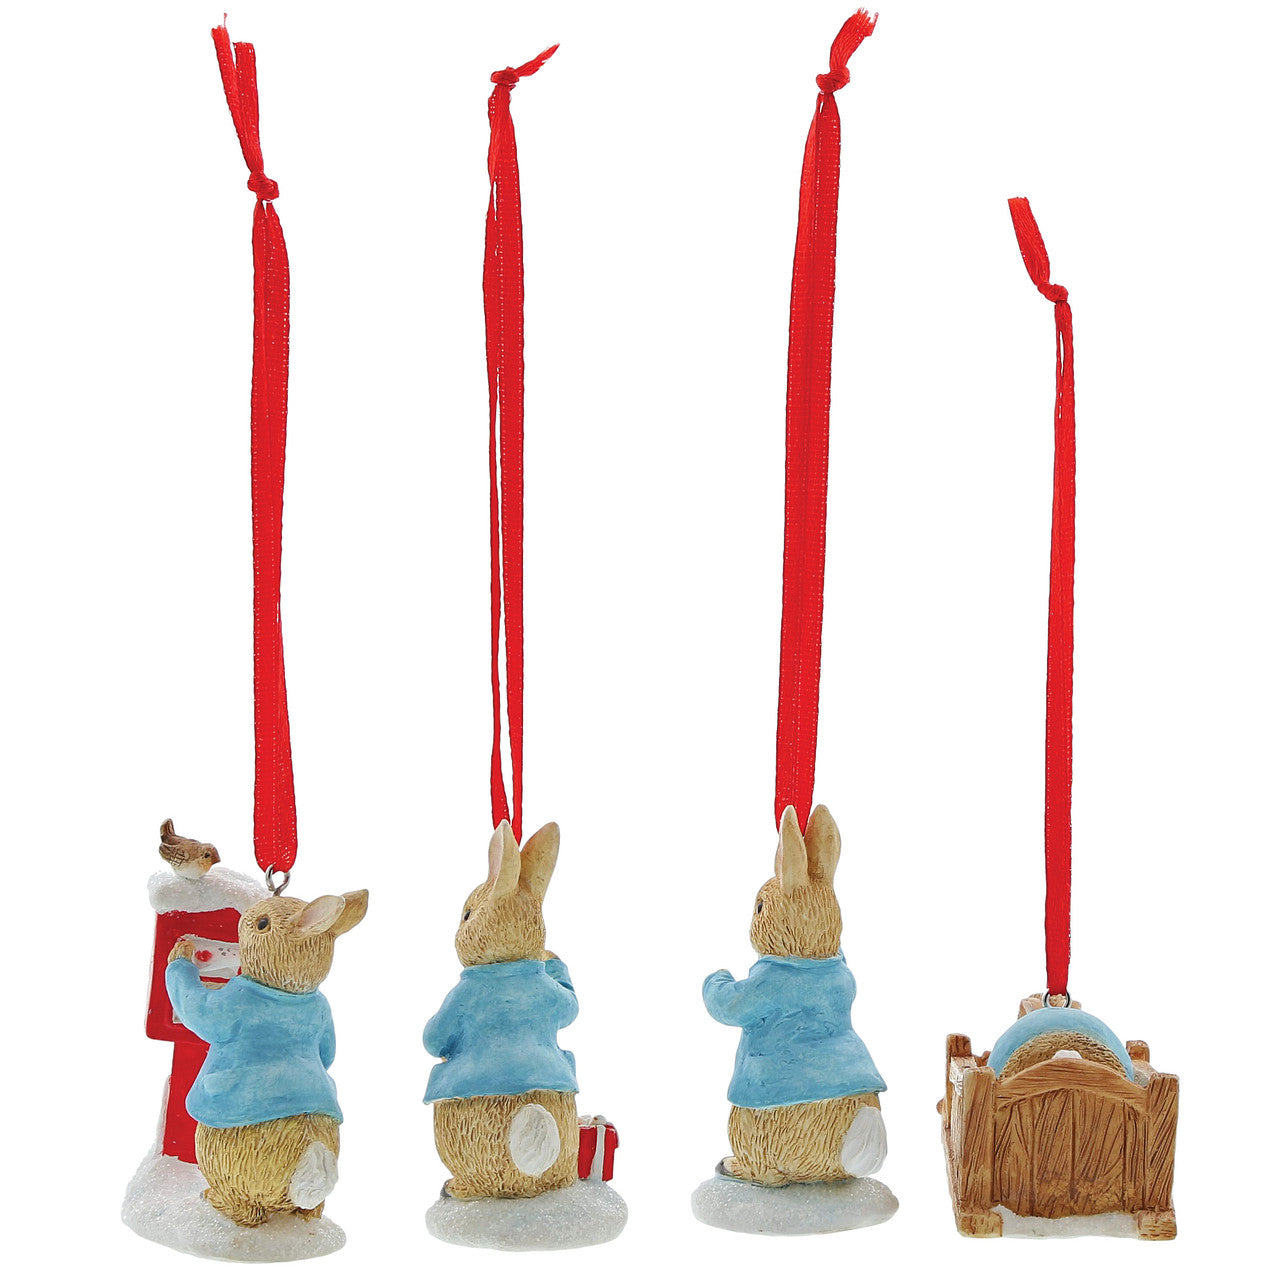 Peter Rabbit - Set 4 Hanging Ornaments